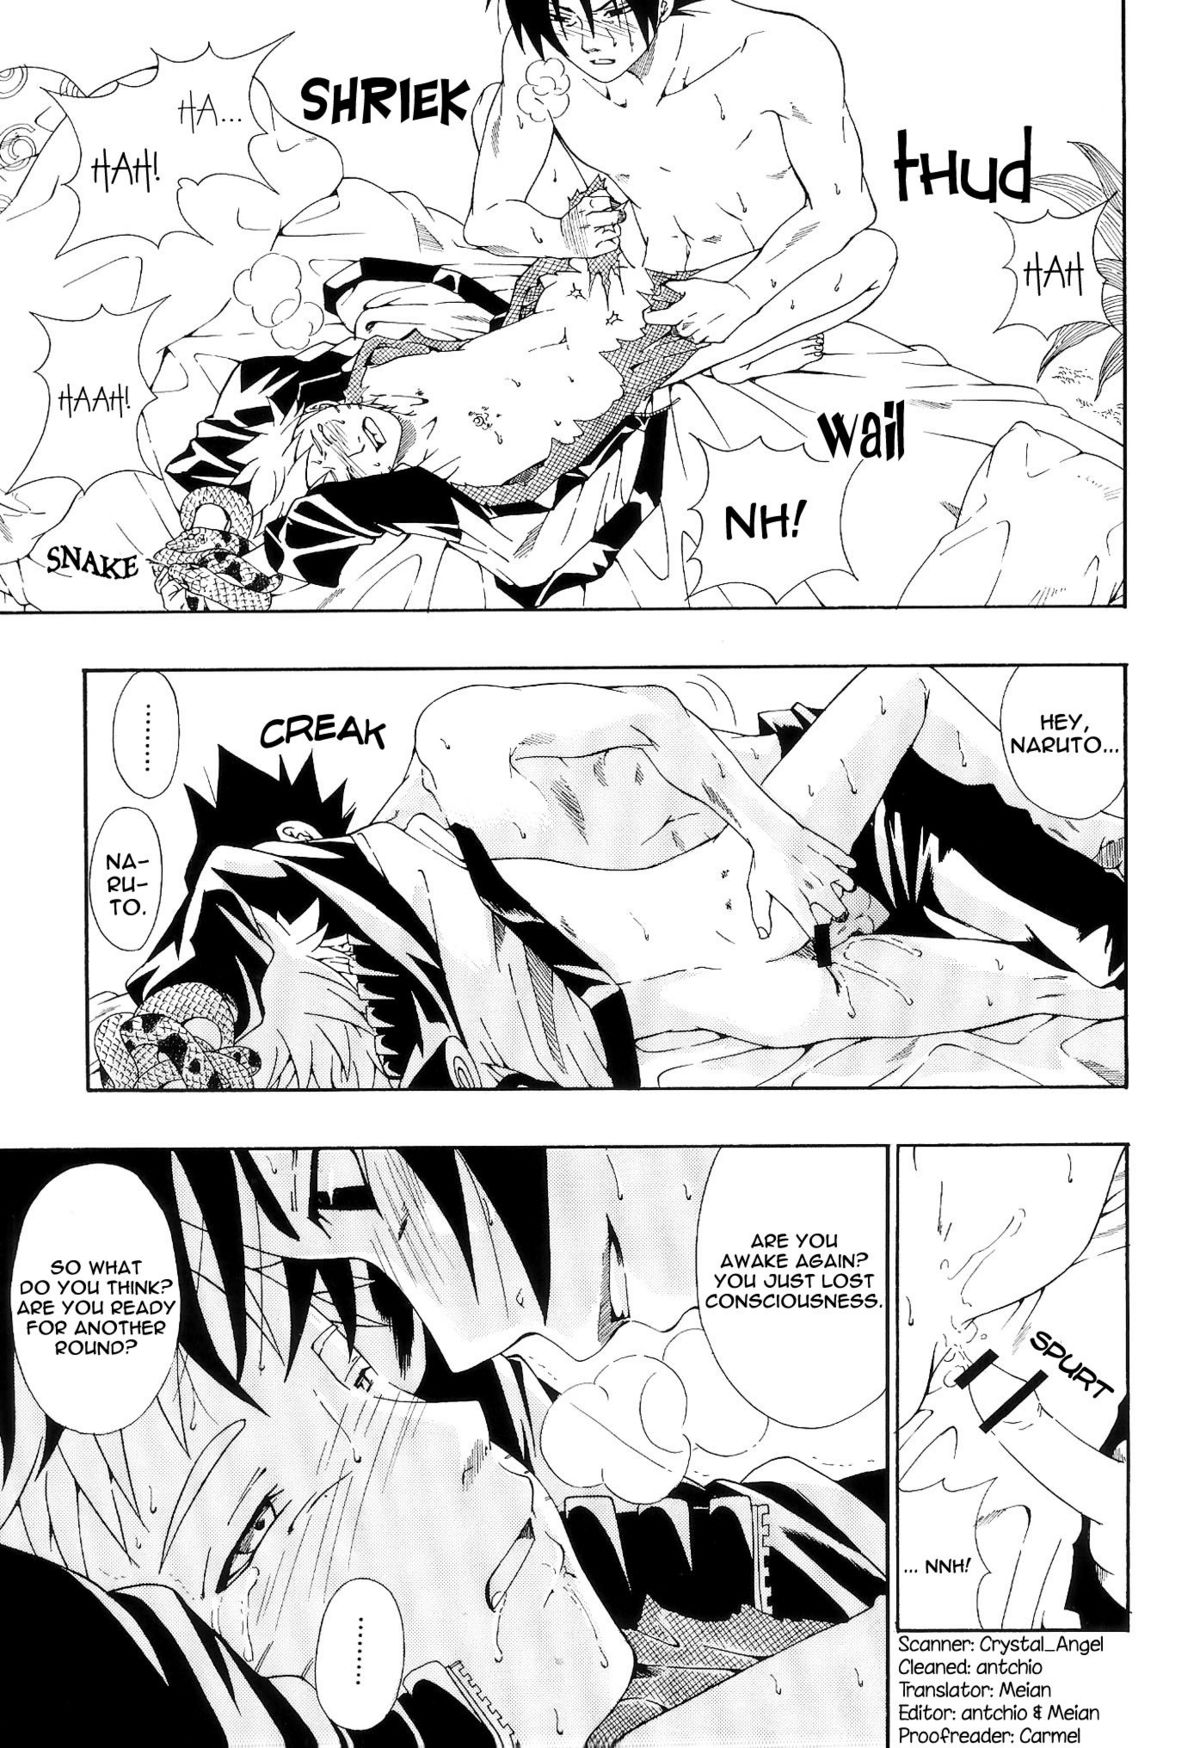 ERO ERO²: Volume 1.5  (NARUTO) [Sasuke X Naruto] YAOI -ENG- page 12 full